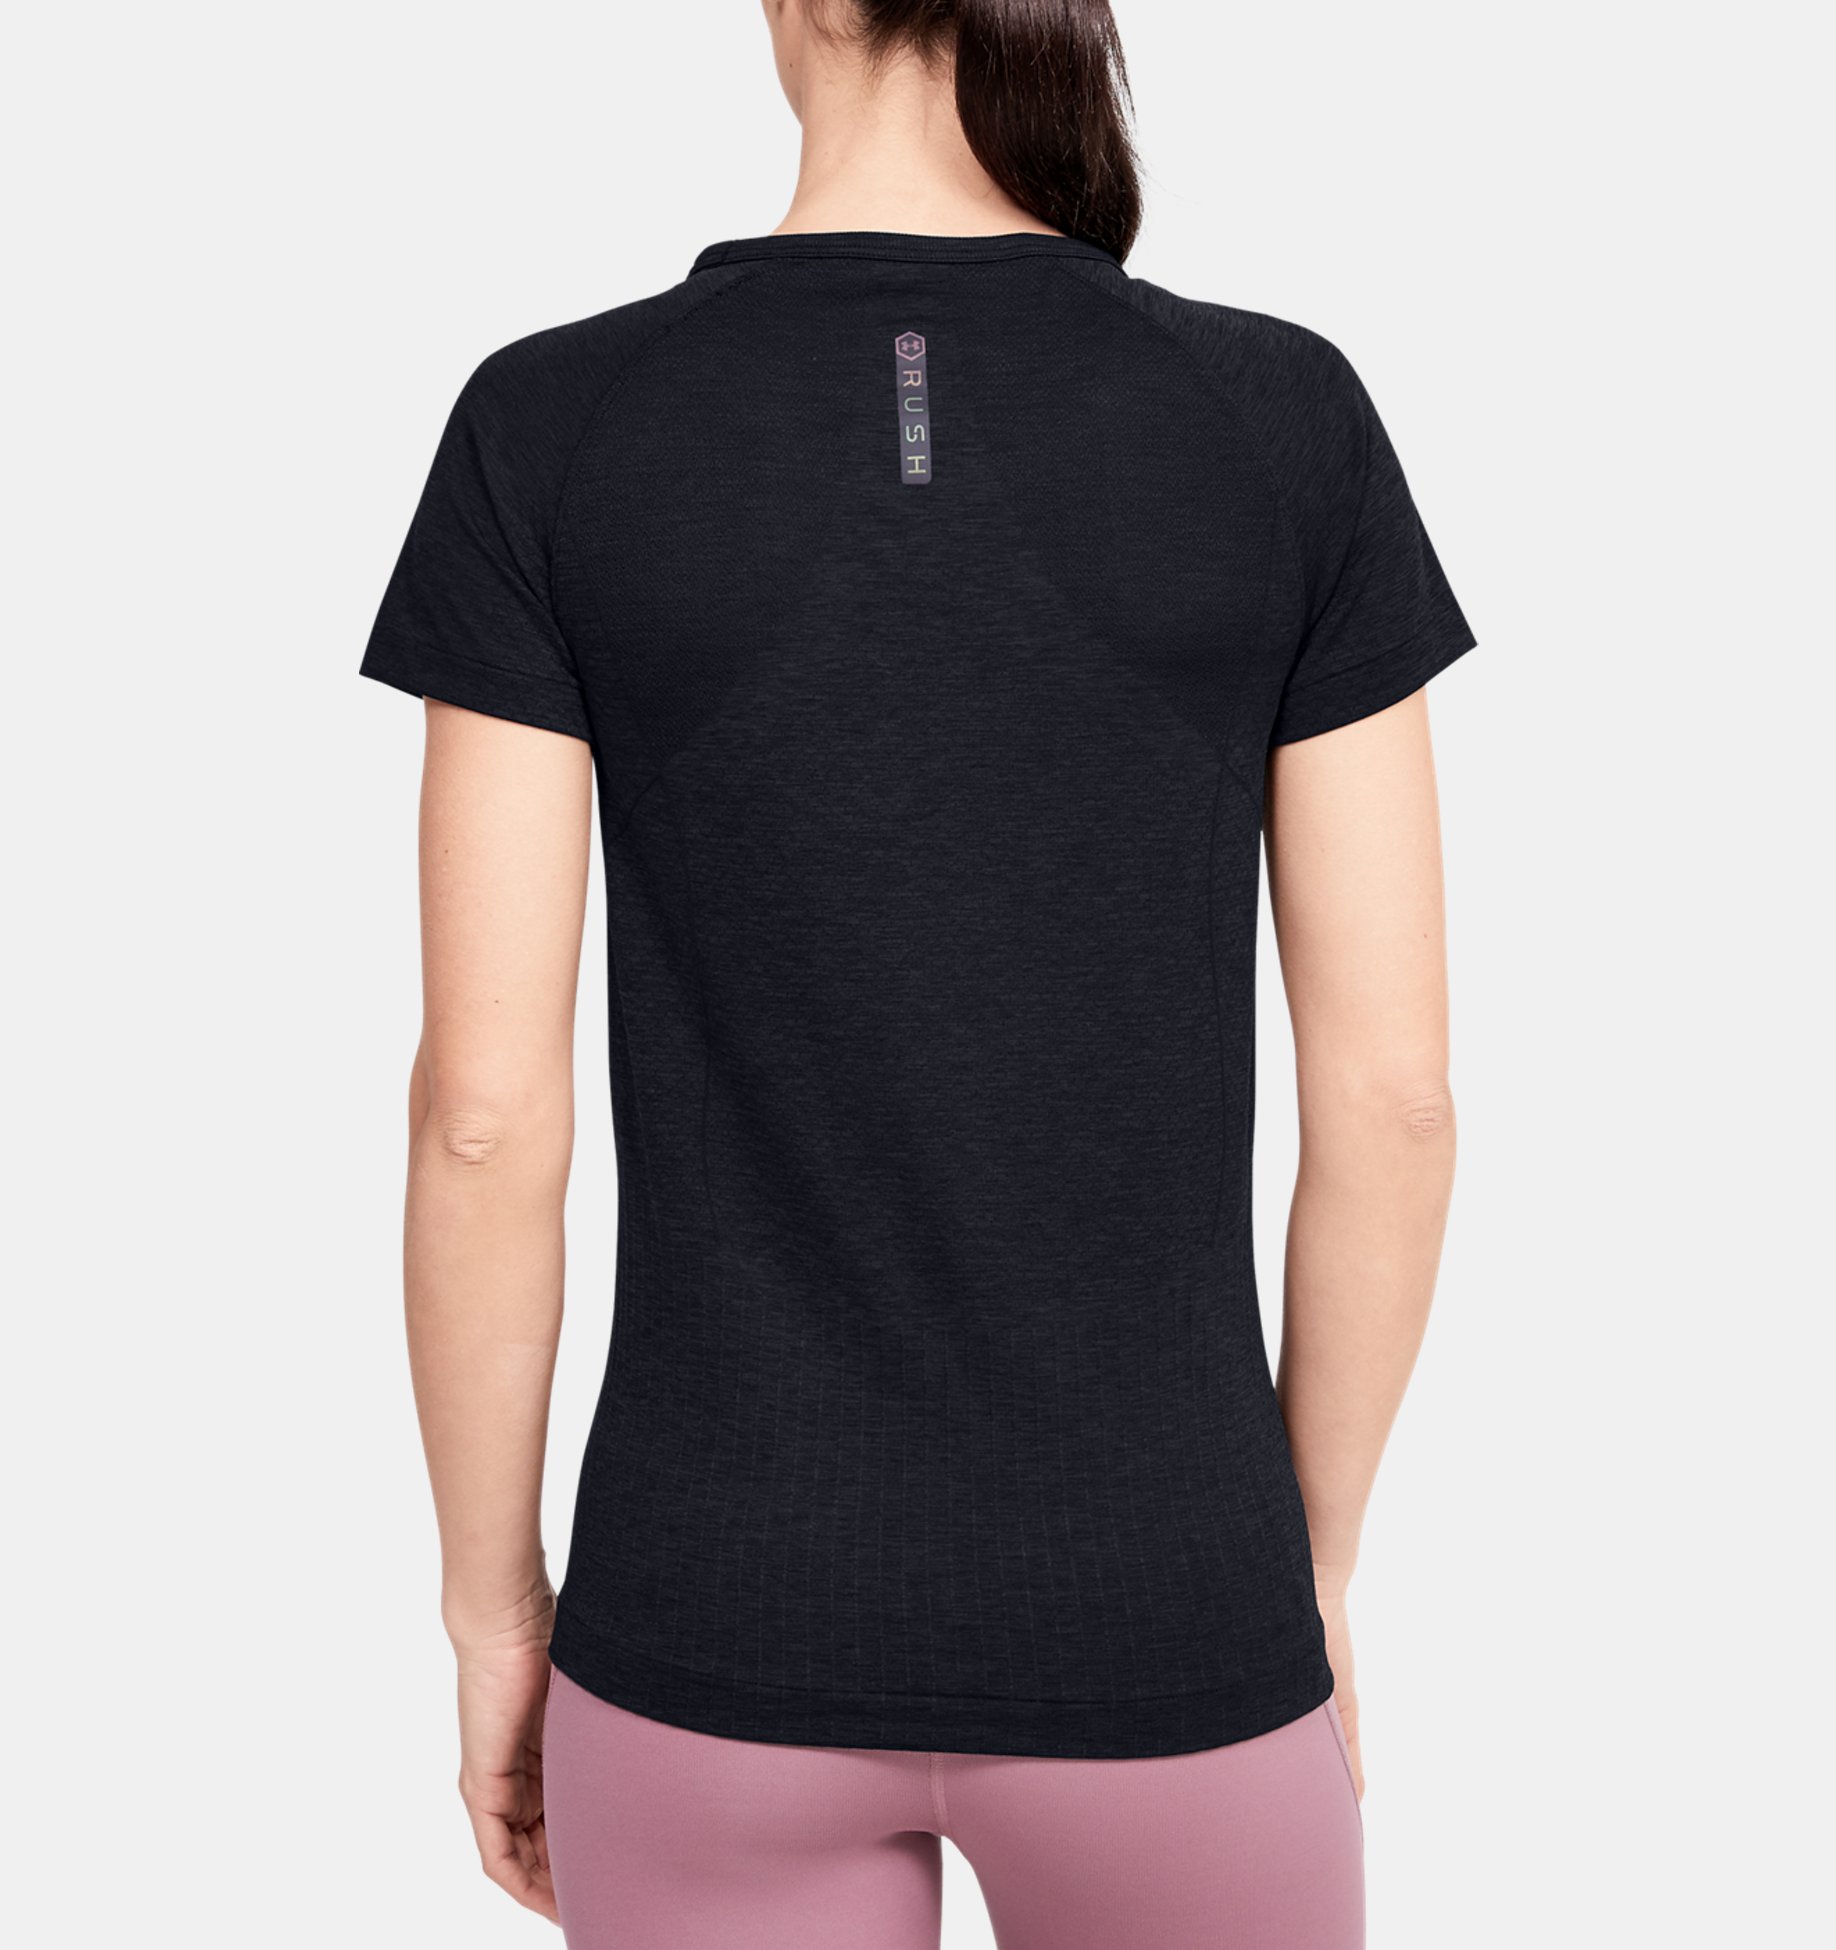 Under Armour Women's Seamless Melange Short Sleeve T-Shirt